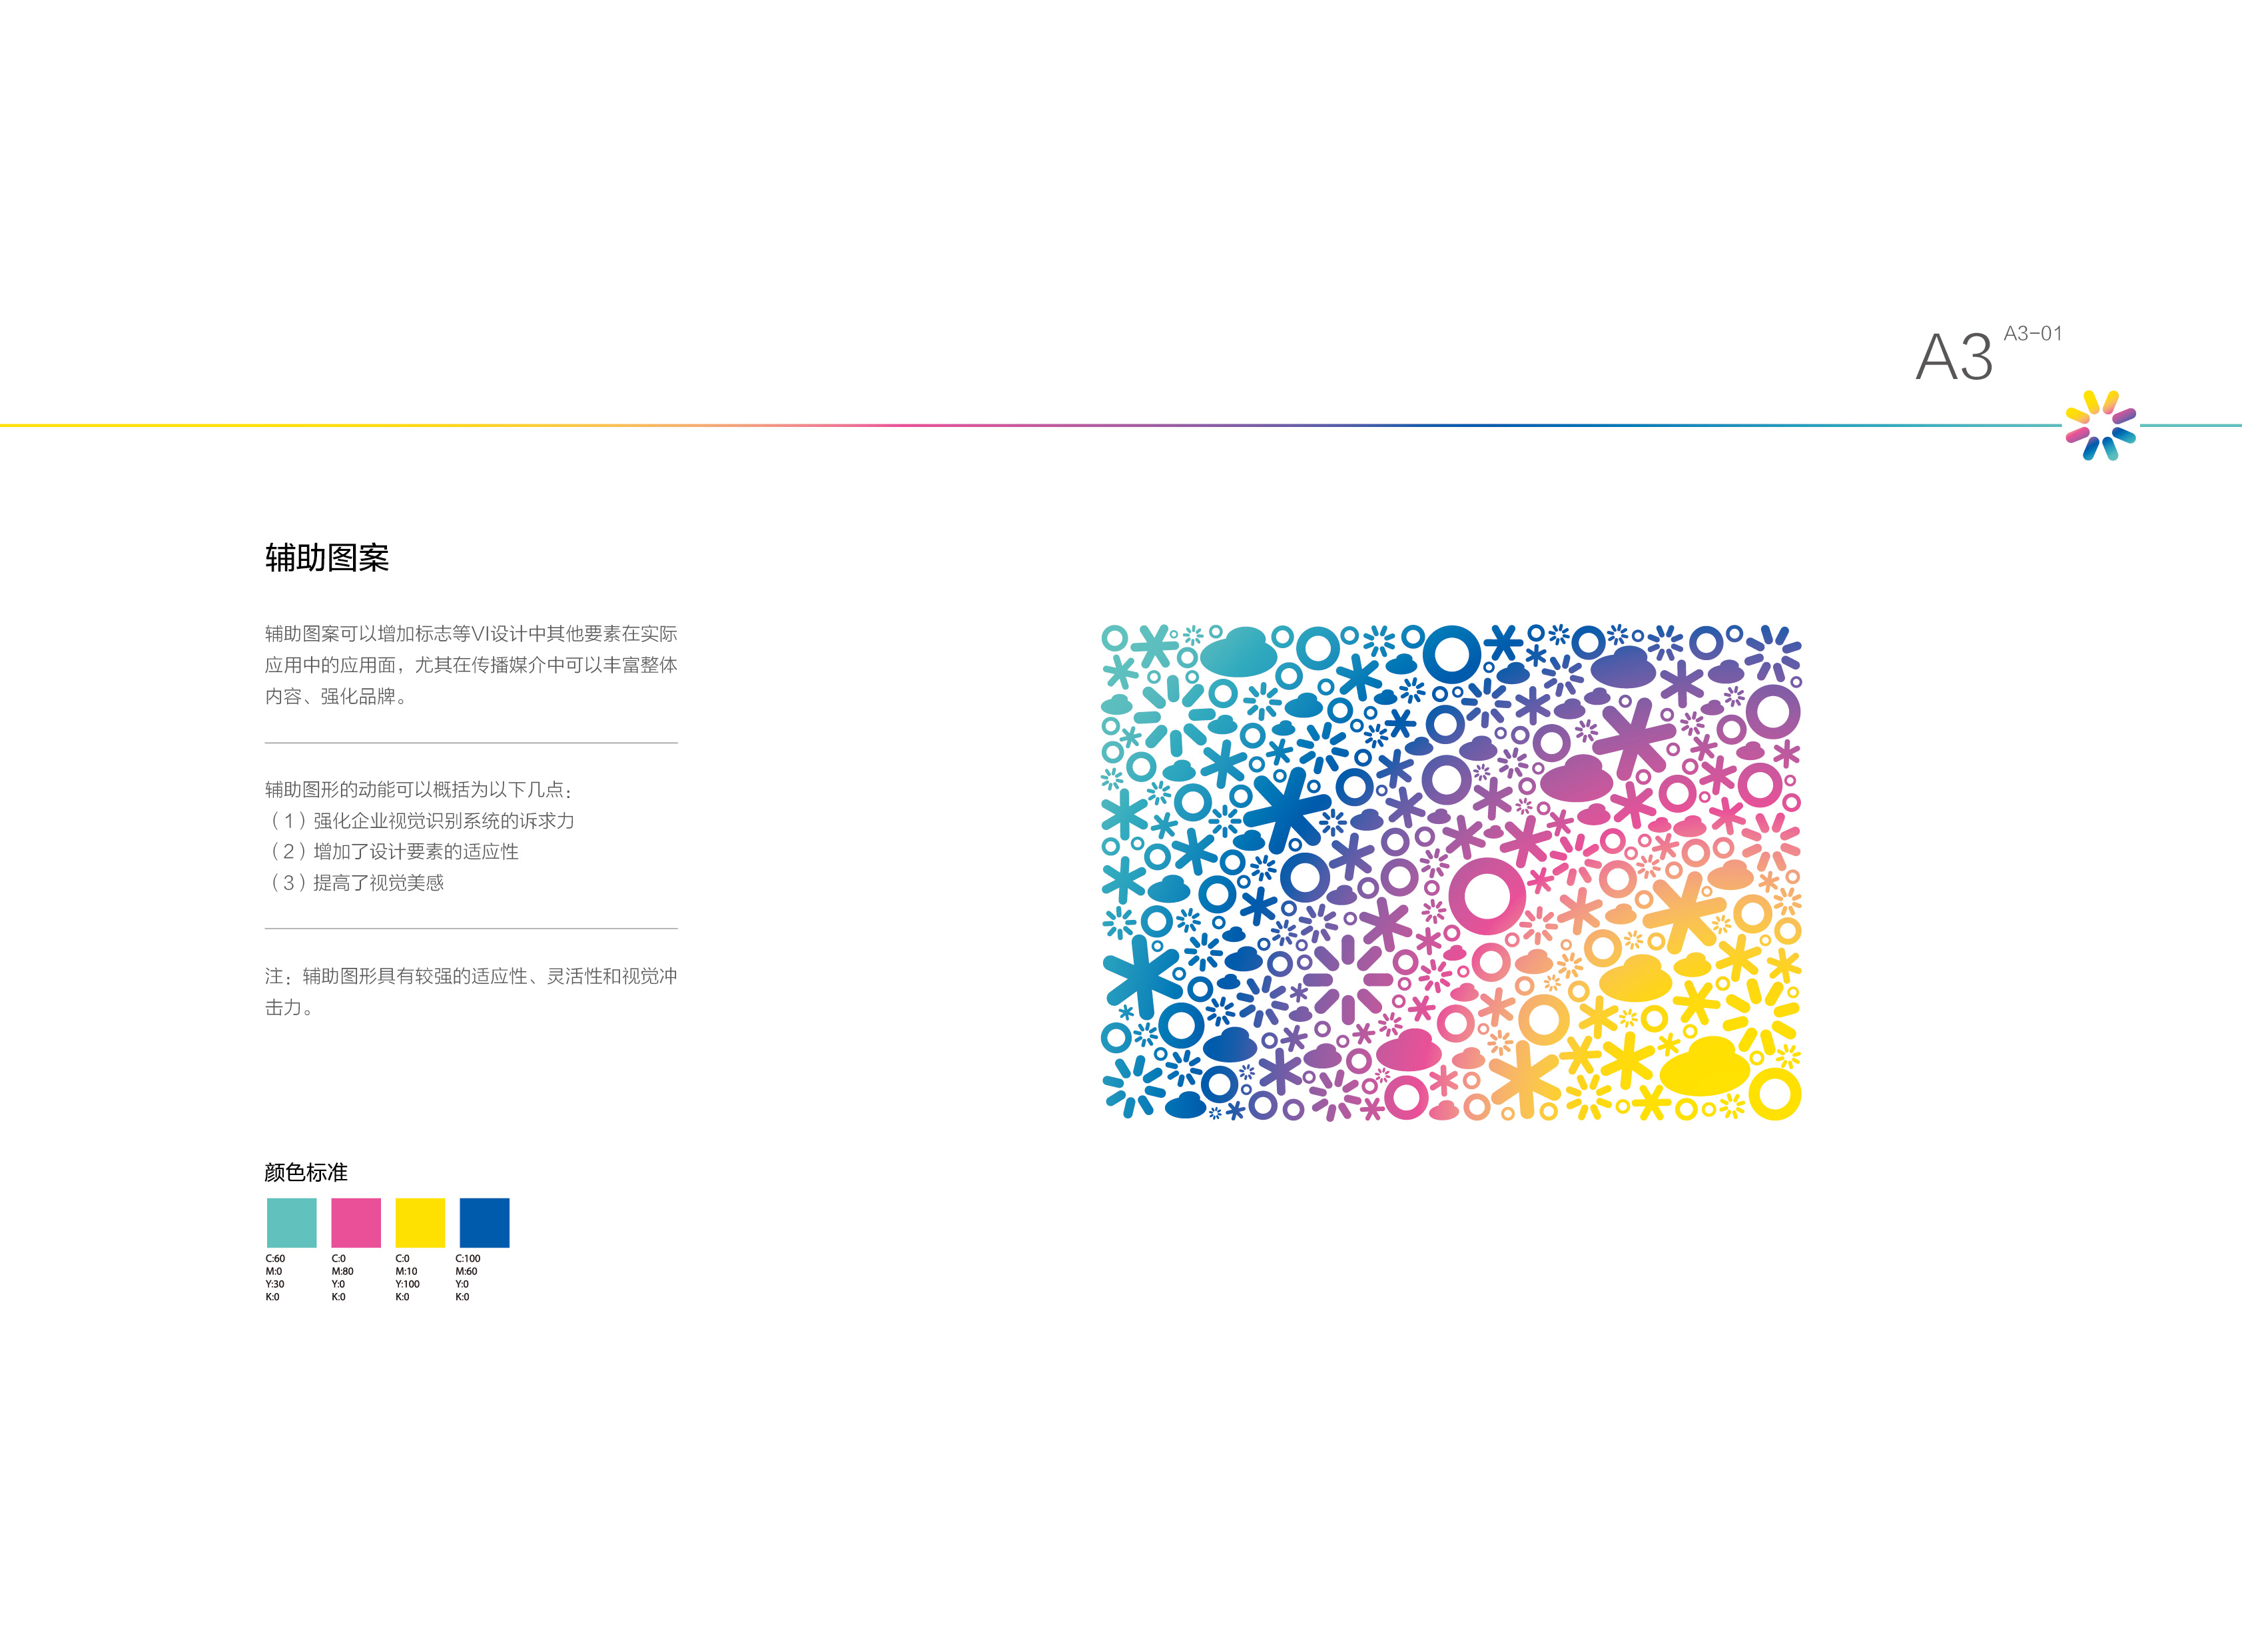 a3 辅助图形这部分主要介绍标志的标准色和辅助色规范,以及logo色彩